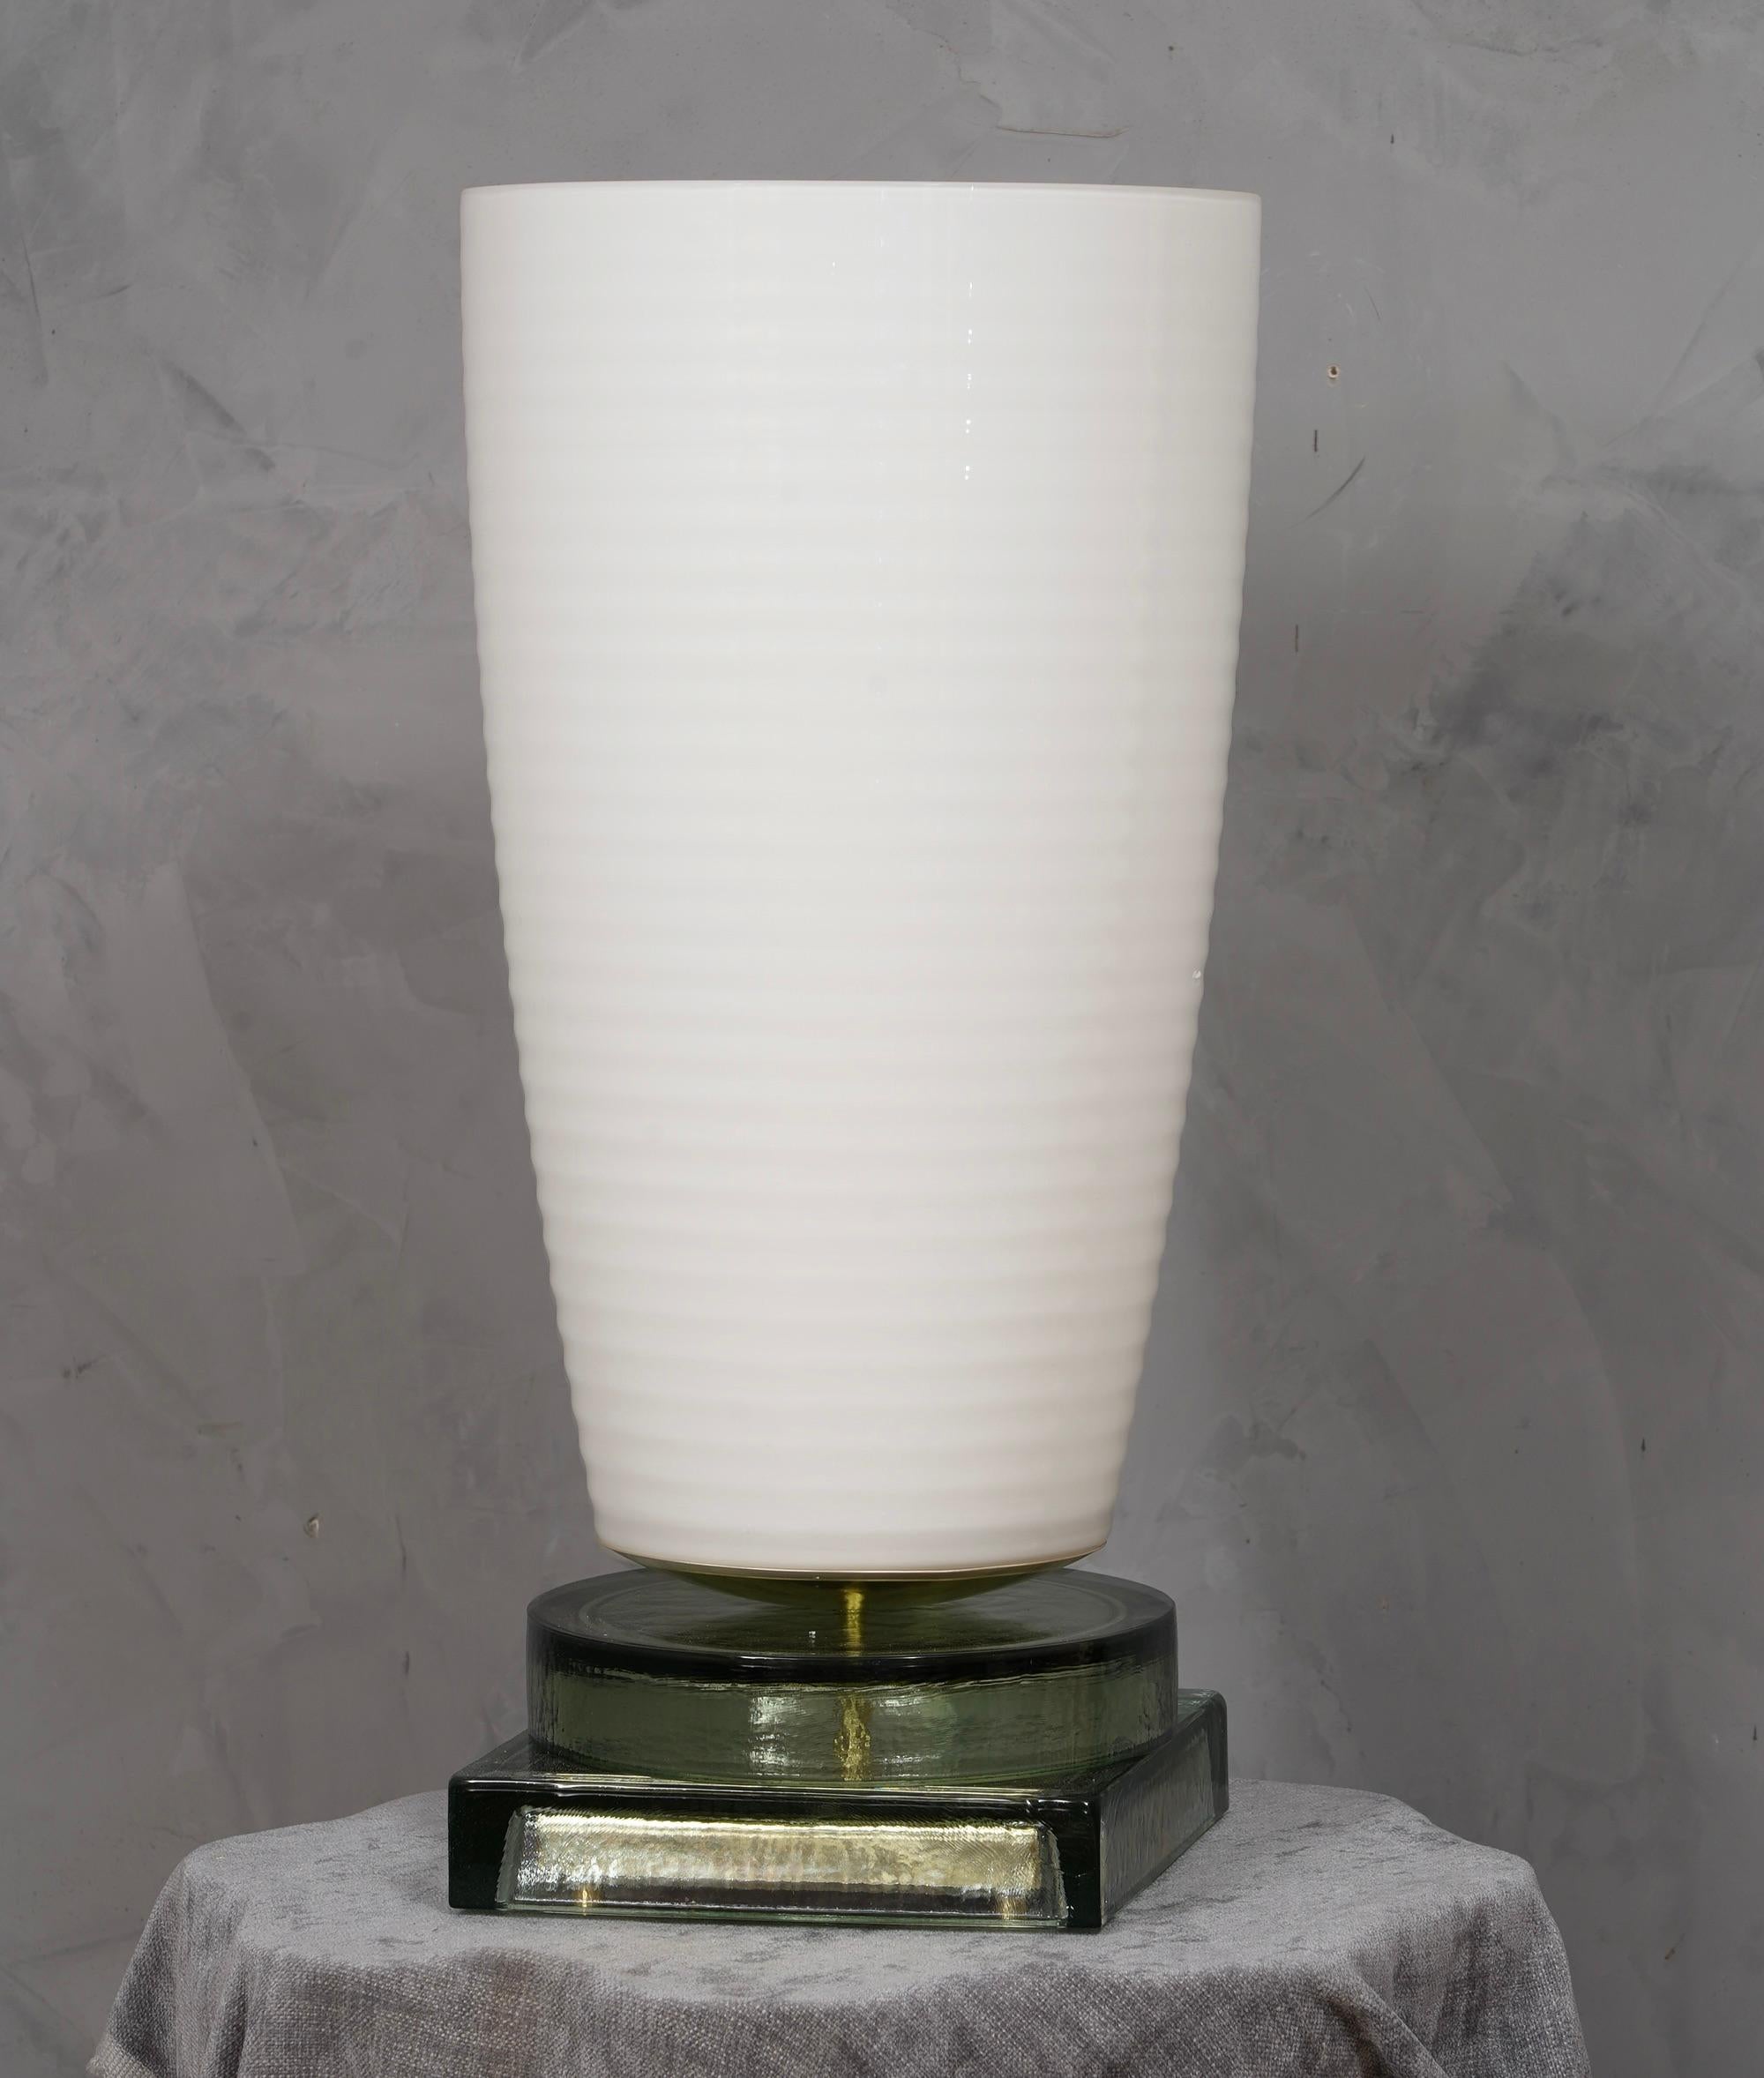 Précieux et unique verre blanc soufflé à la main de Murano, design classique mais original avec un fort contraste entre le grand vase blanc et la base en verre transparent.

La lampe est caractérisée par un grand vase blanc à la forme légèrement